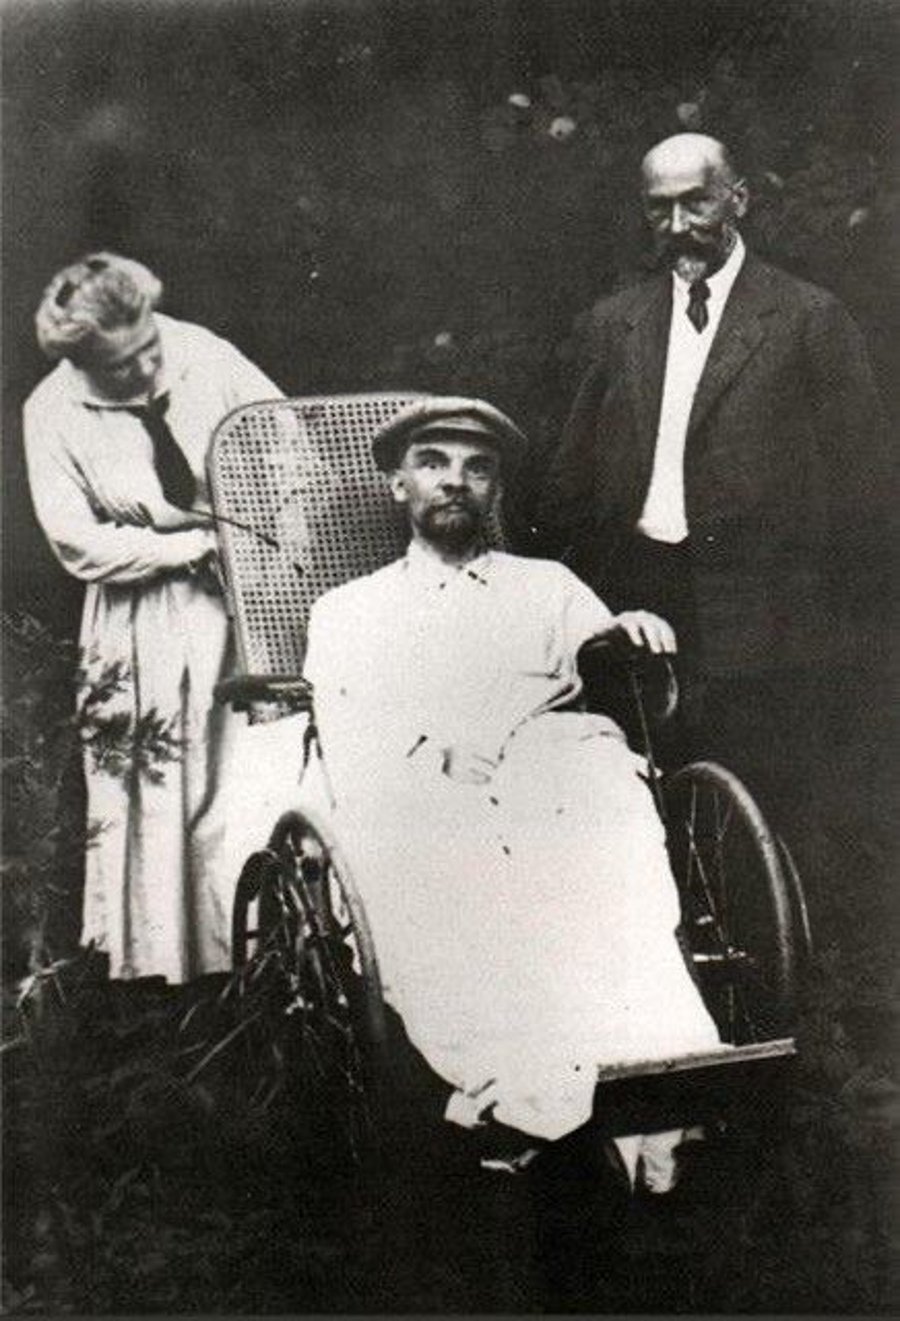 תמונתו האחרונה של מנהיג ומייסד בריה"מ ולדימיר לנין, לאחר שספג שבץ. שנות ה-20